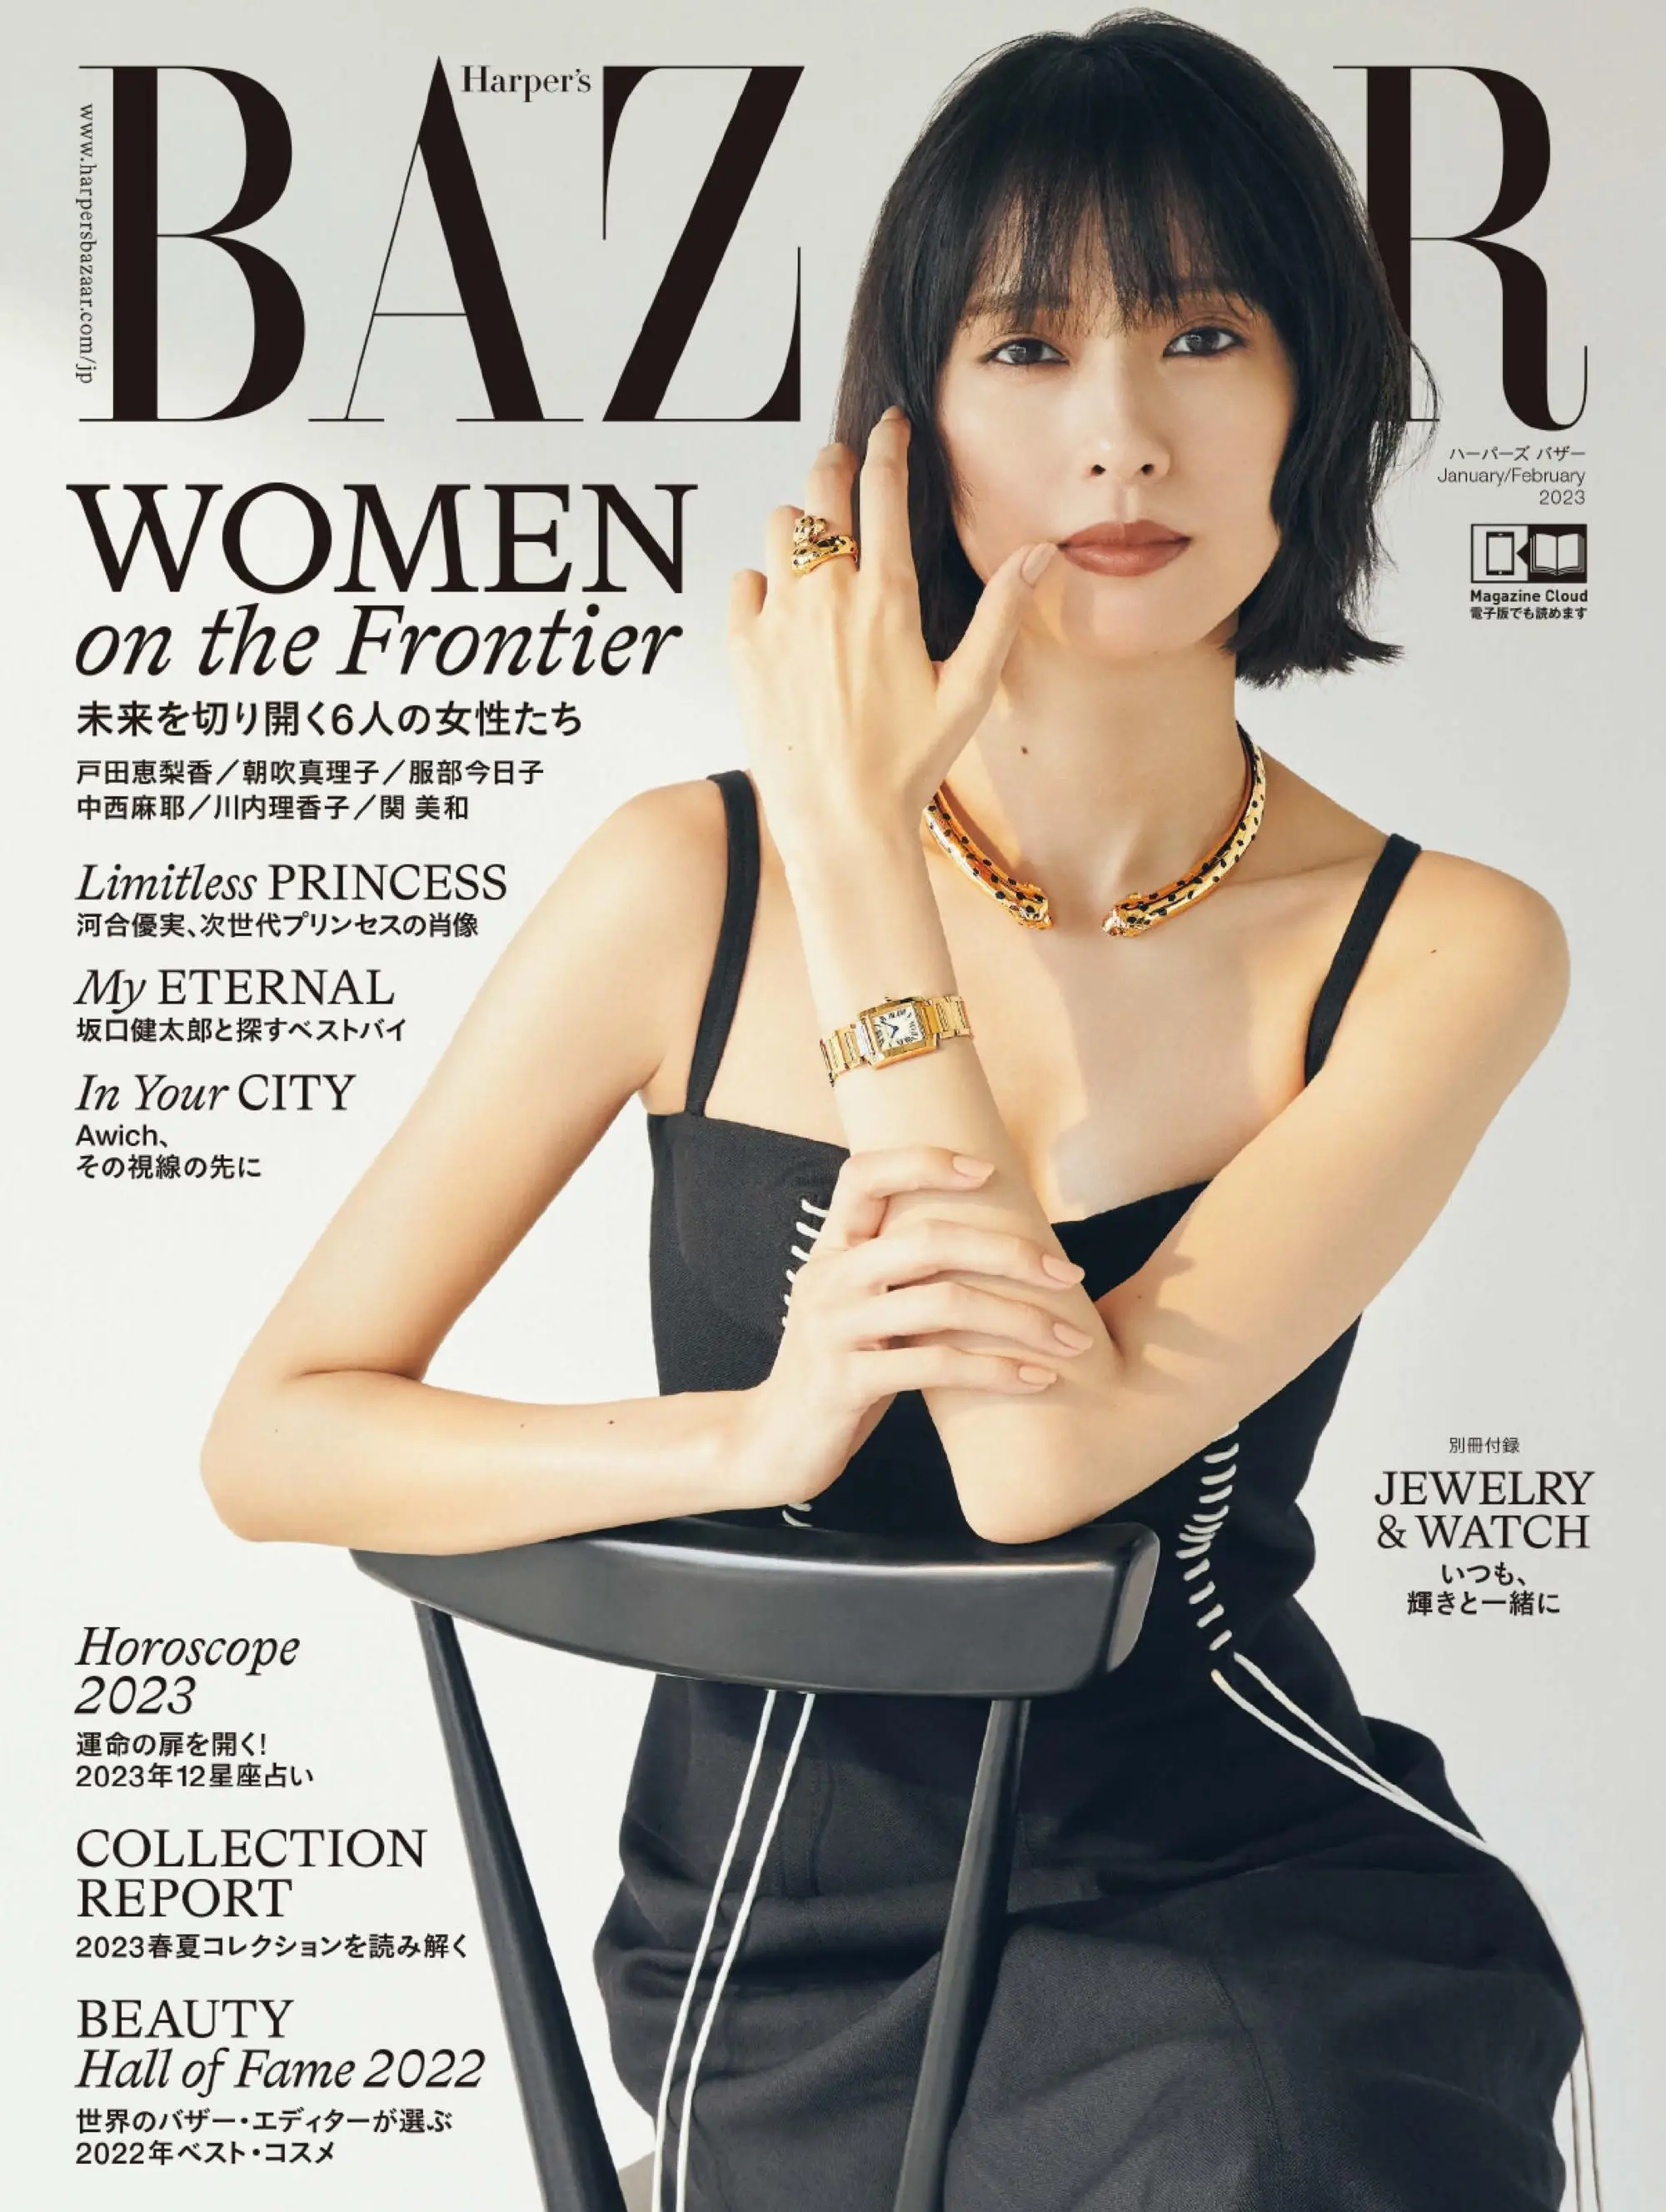 ハーパーズ バザー  Harper’s Bazaar Japan 2022年12月